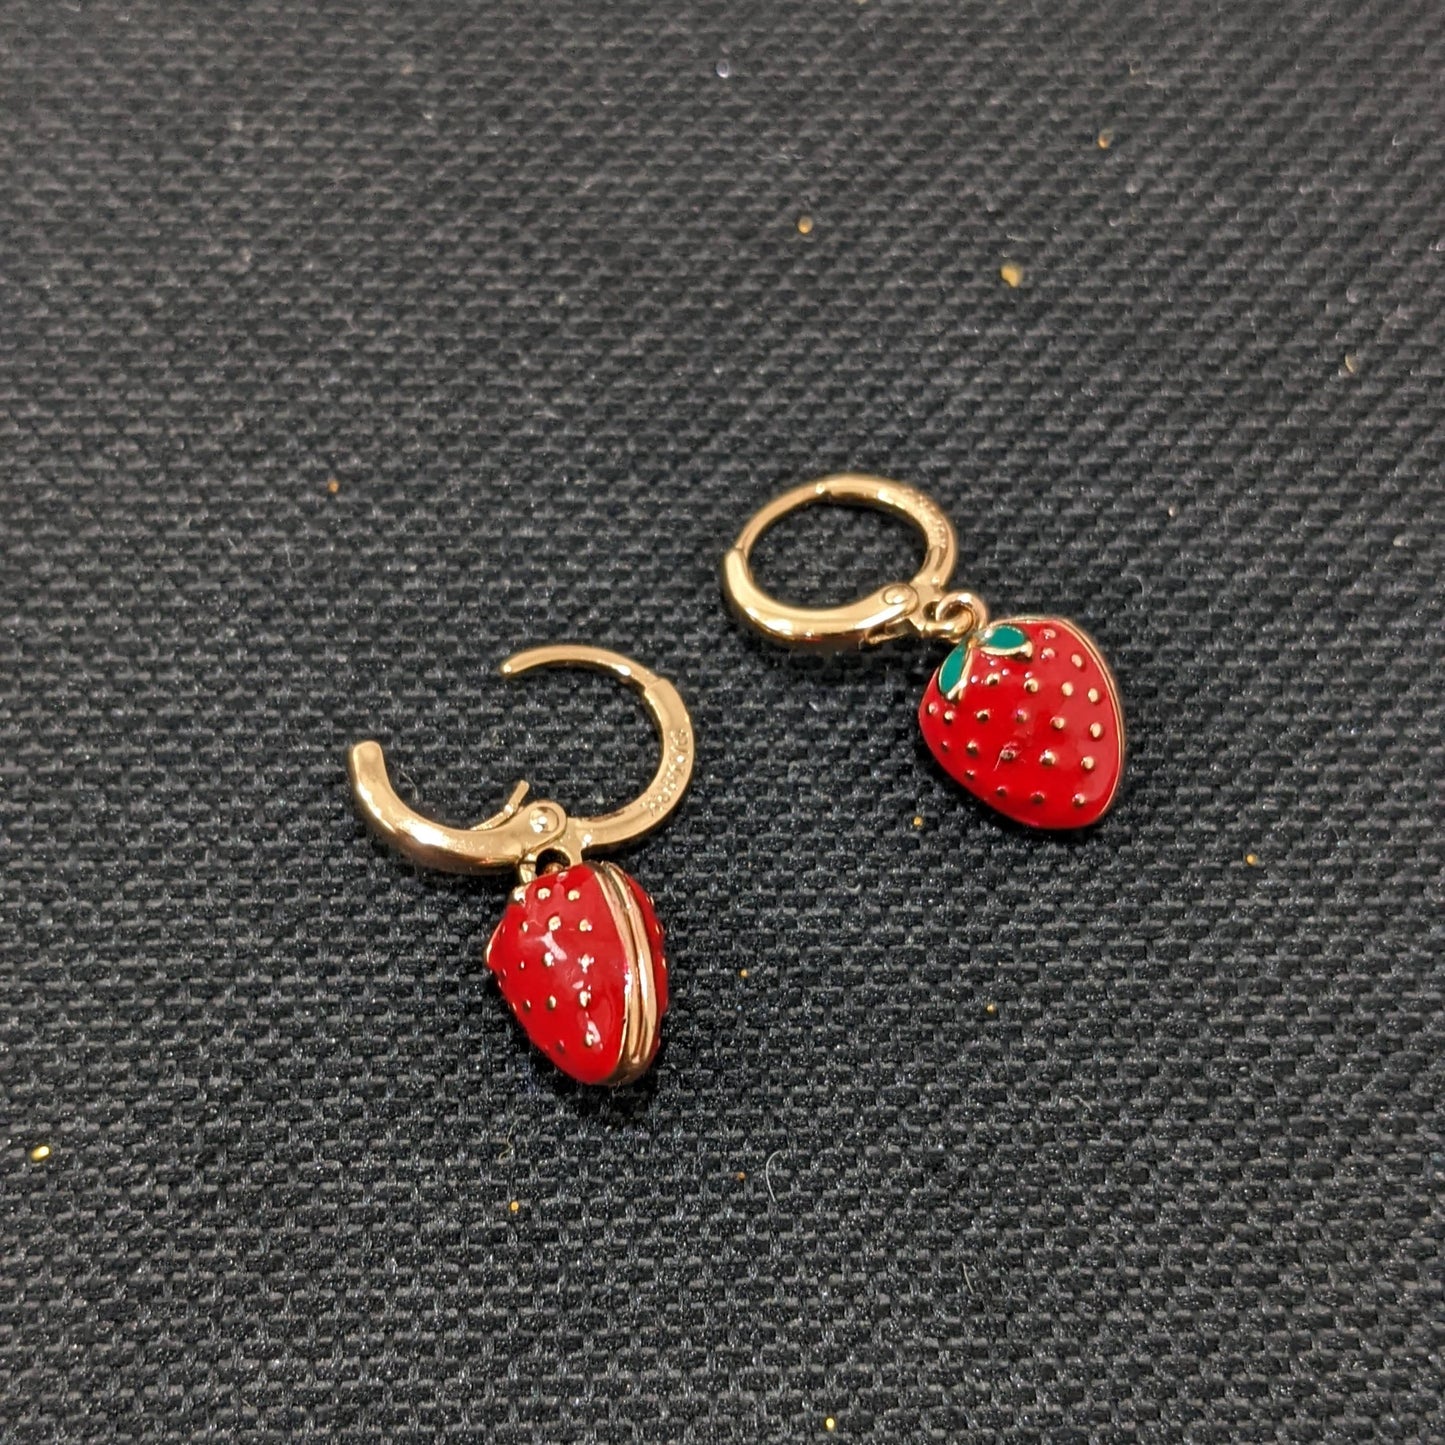 Strawberry design Enamel ring style drop earrings